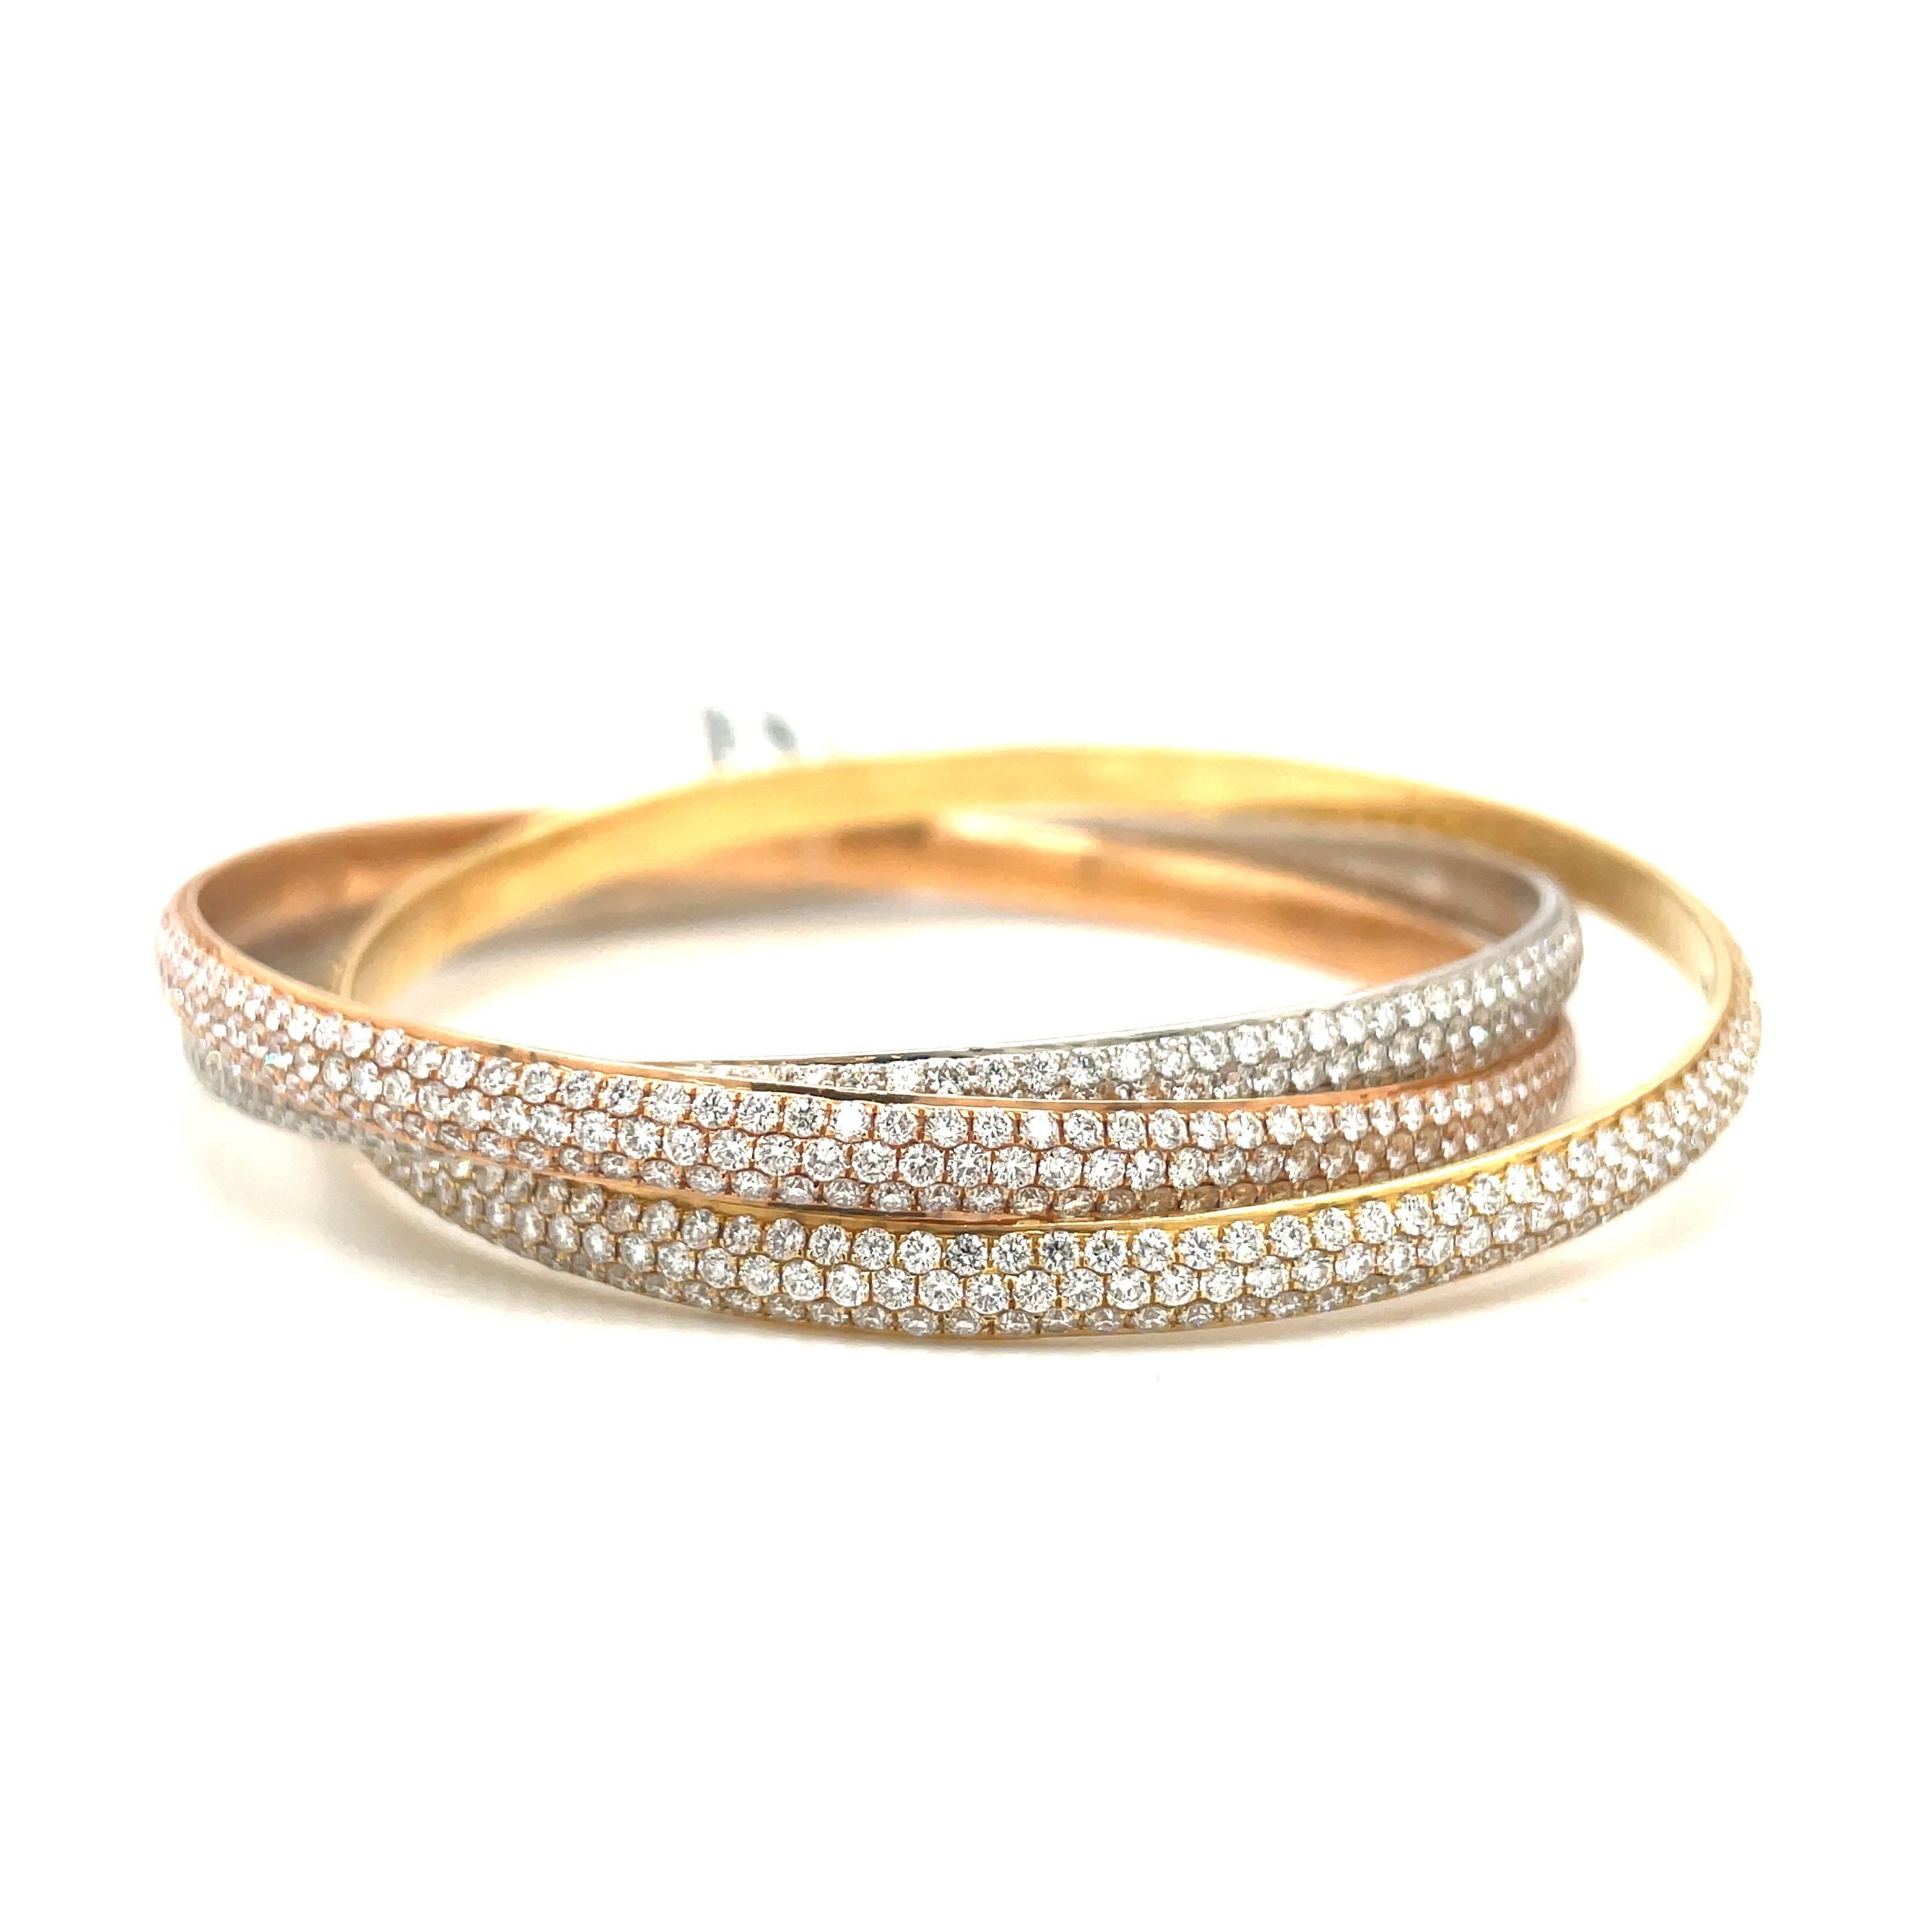 Dieses rollende Armband aus 18 Karat Gelb-, Rosé- und Weißgold ist ein Klassiker. Die Armspange ist mit 17,05 Karat runden Brillanten besetzt. Jedes Armband hat 3 Reihen von Diamanten.
Der Innenumfang beträgt 2,5